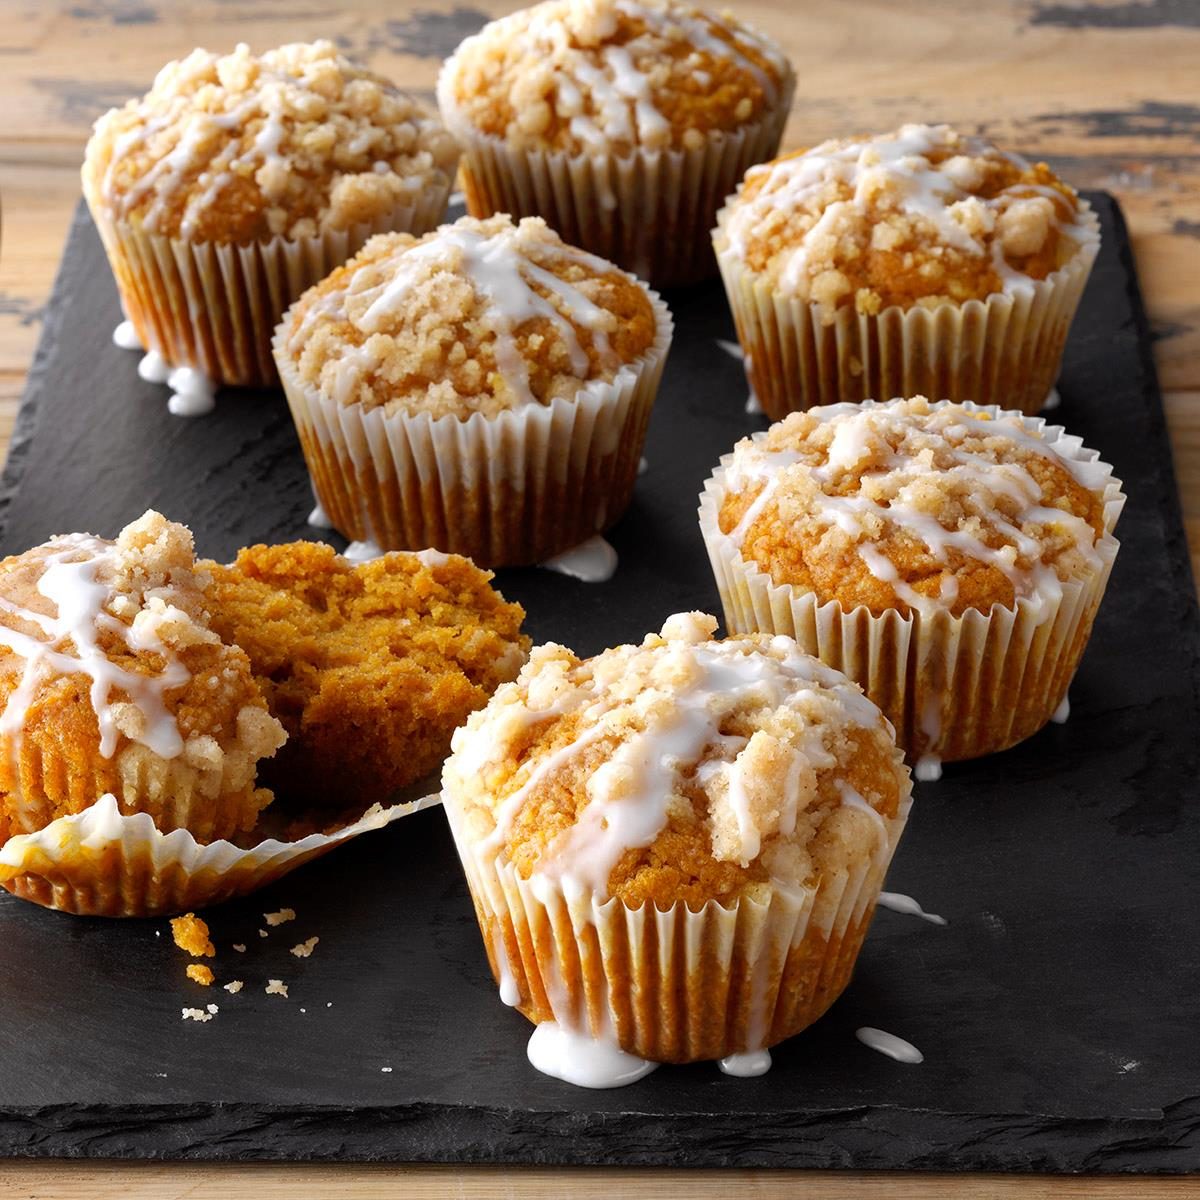 Pumpkin Crumb Cake Muffins